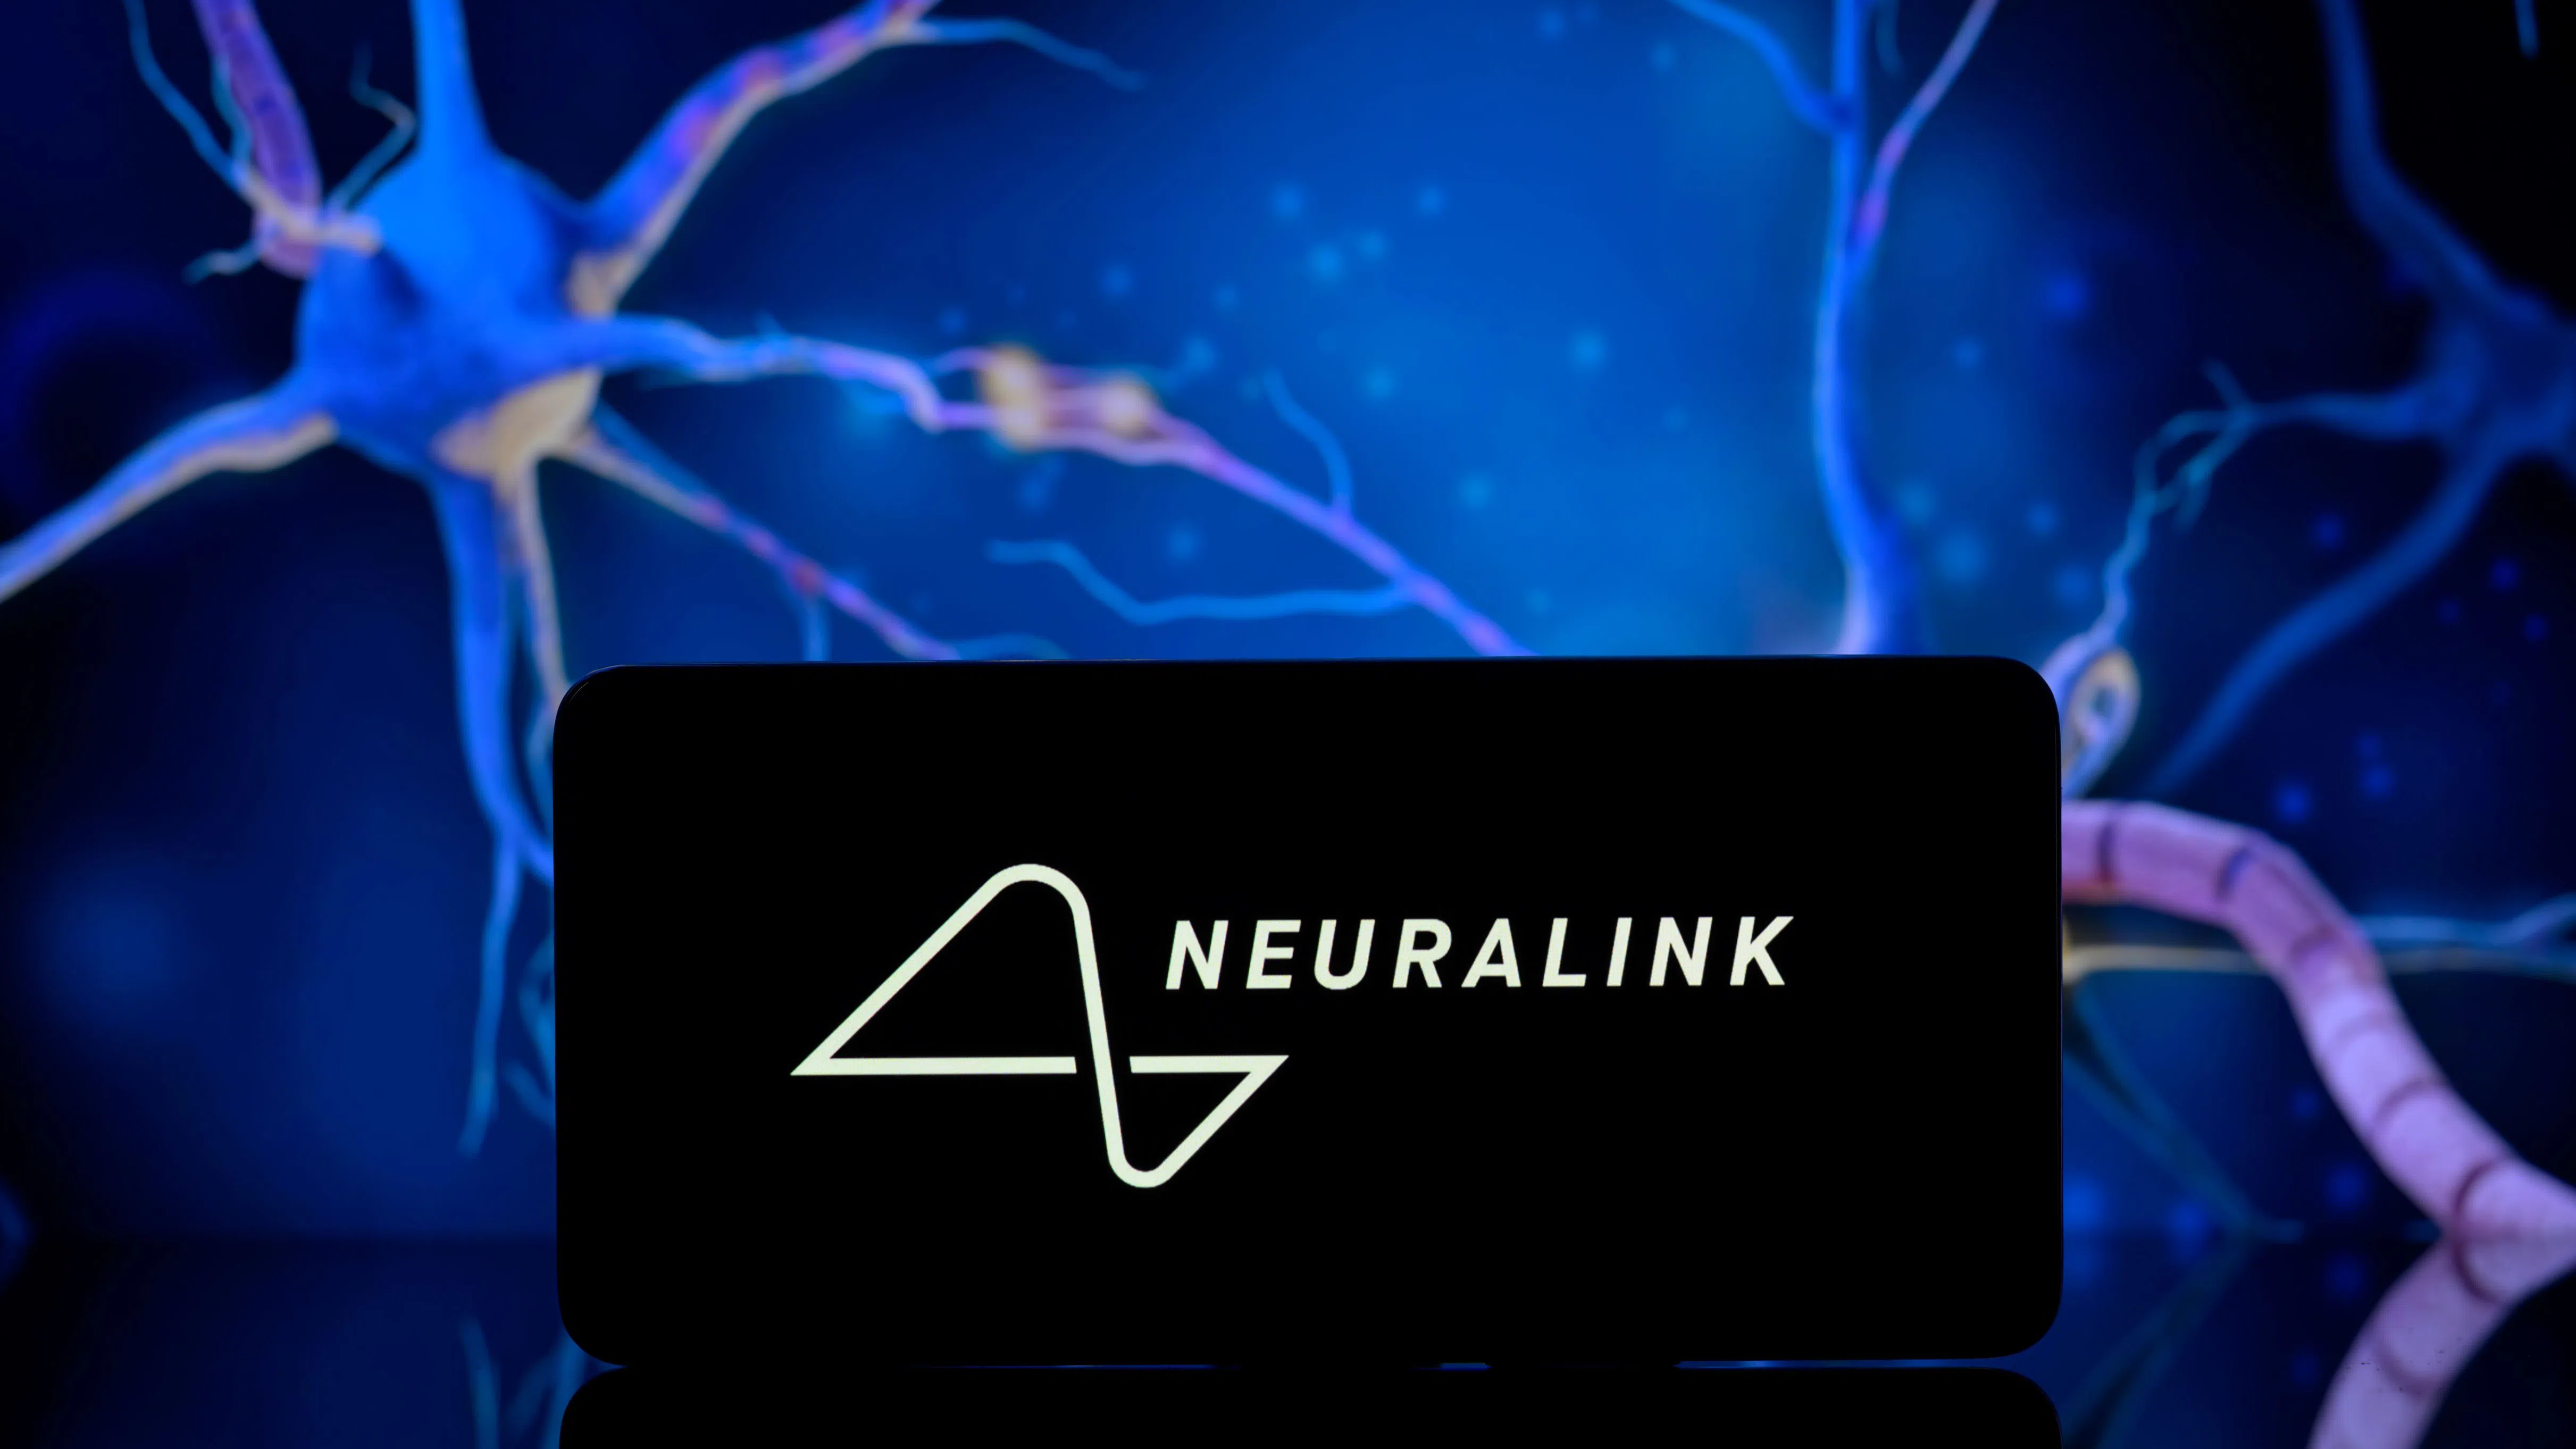 Първият пациент на Neuralink може да управлява курсор чрез мисъл